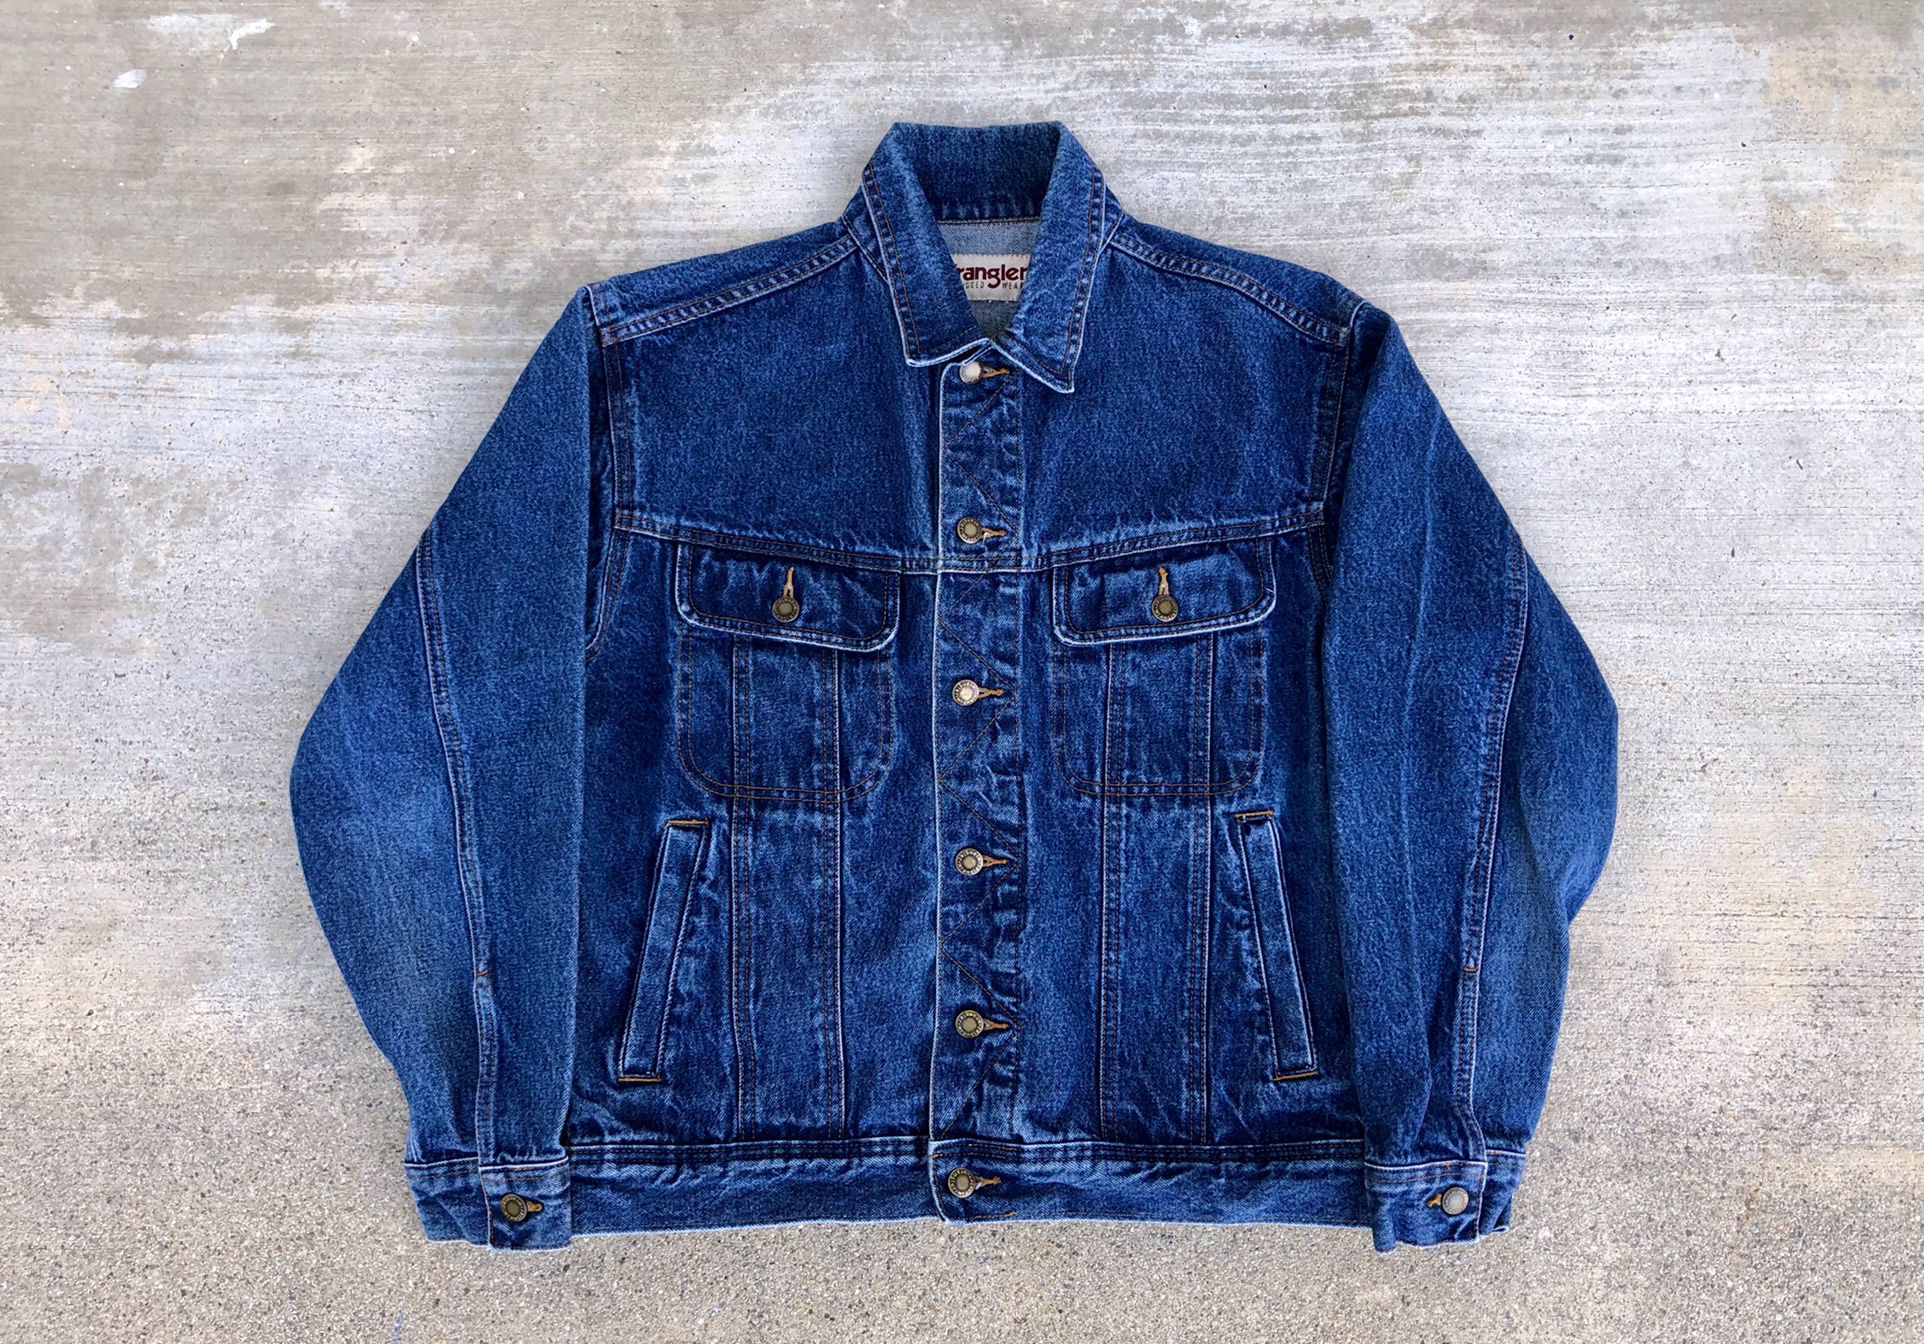 Vintage 1990s / 90s Wrangler Trucker Denim Jacket Not Levi’s 